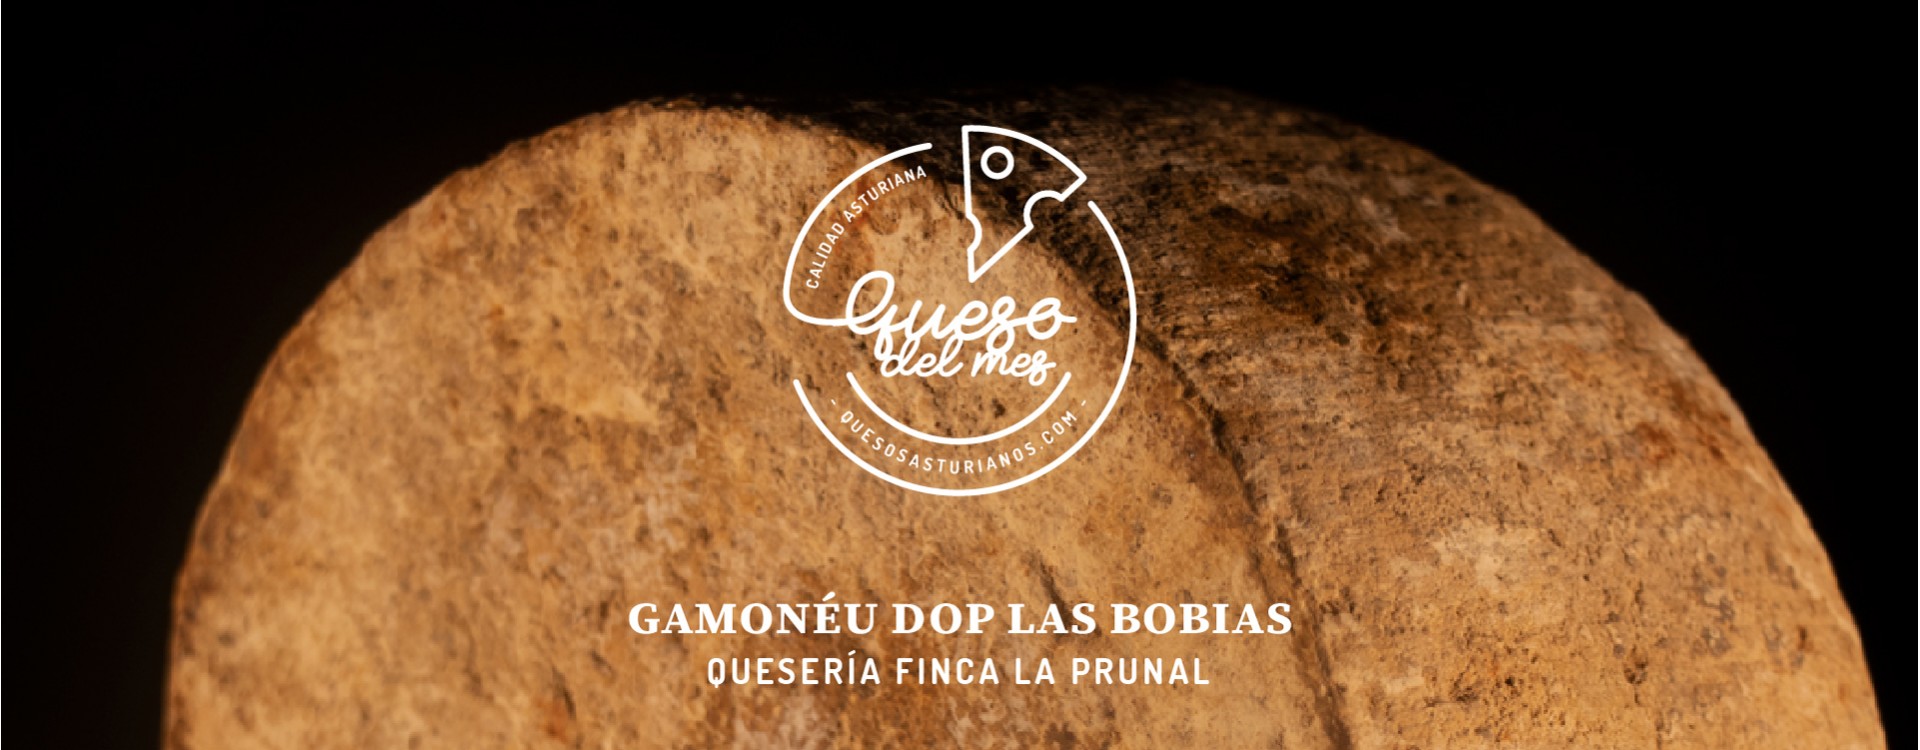 Descubriendo el tesoro culinario de los Picos de Europa: Gamonéu DOP Las Bobias de Quesería Finca La Prunal